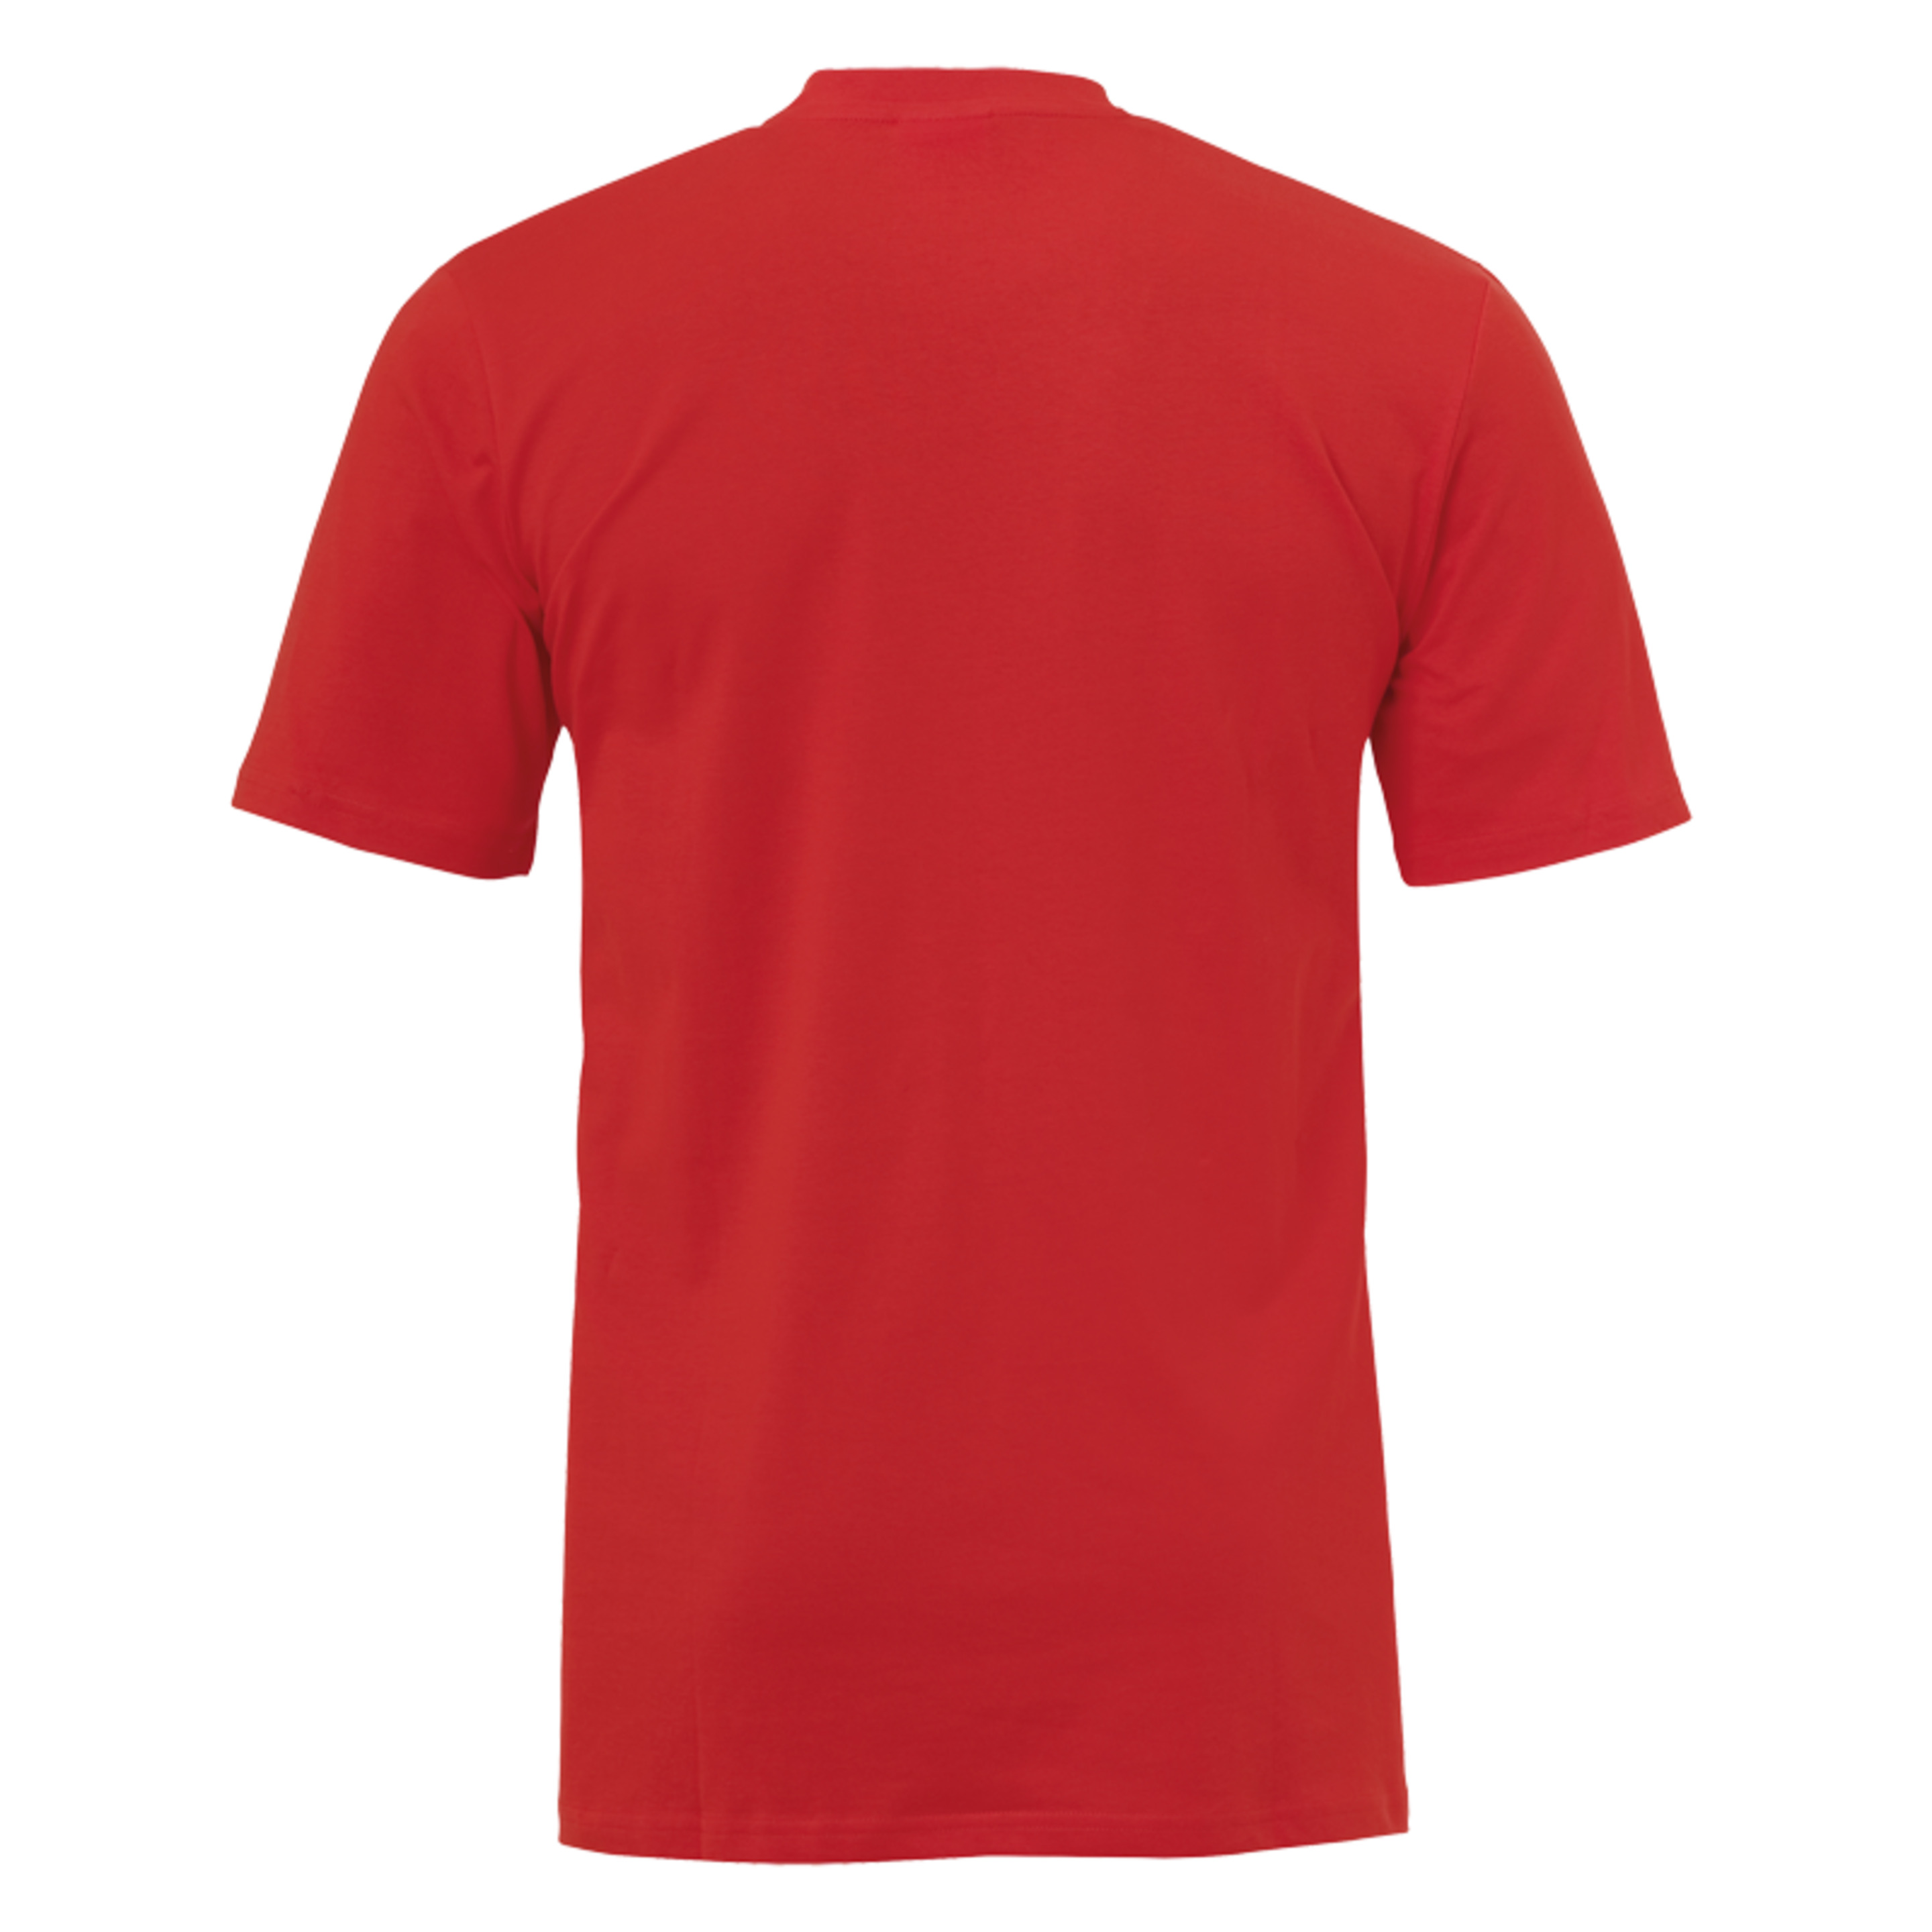 Liga 2.0 Camiseta De Entrenamiento Rojo/blanco Uhlsport